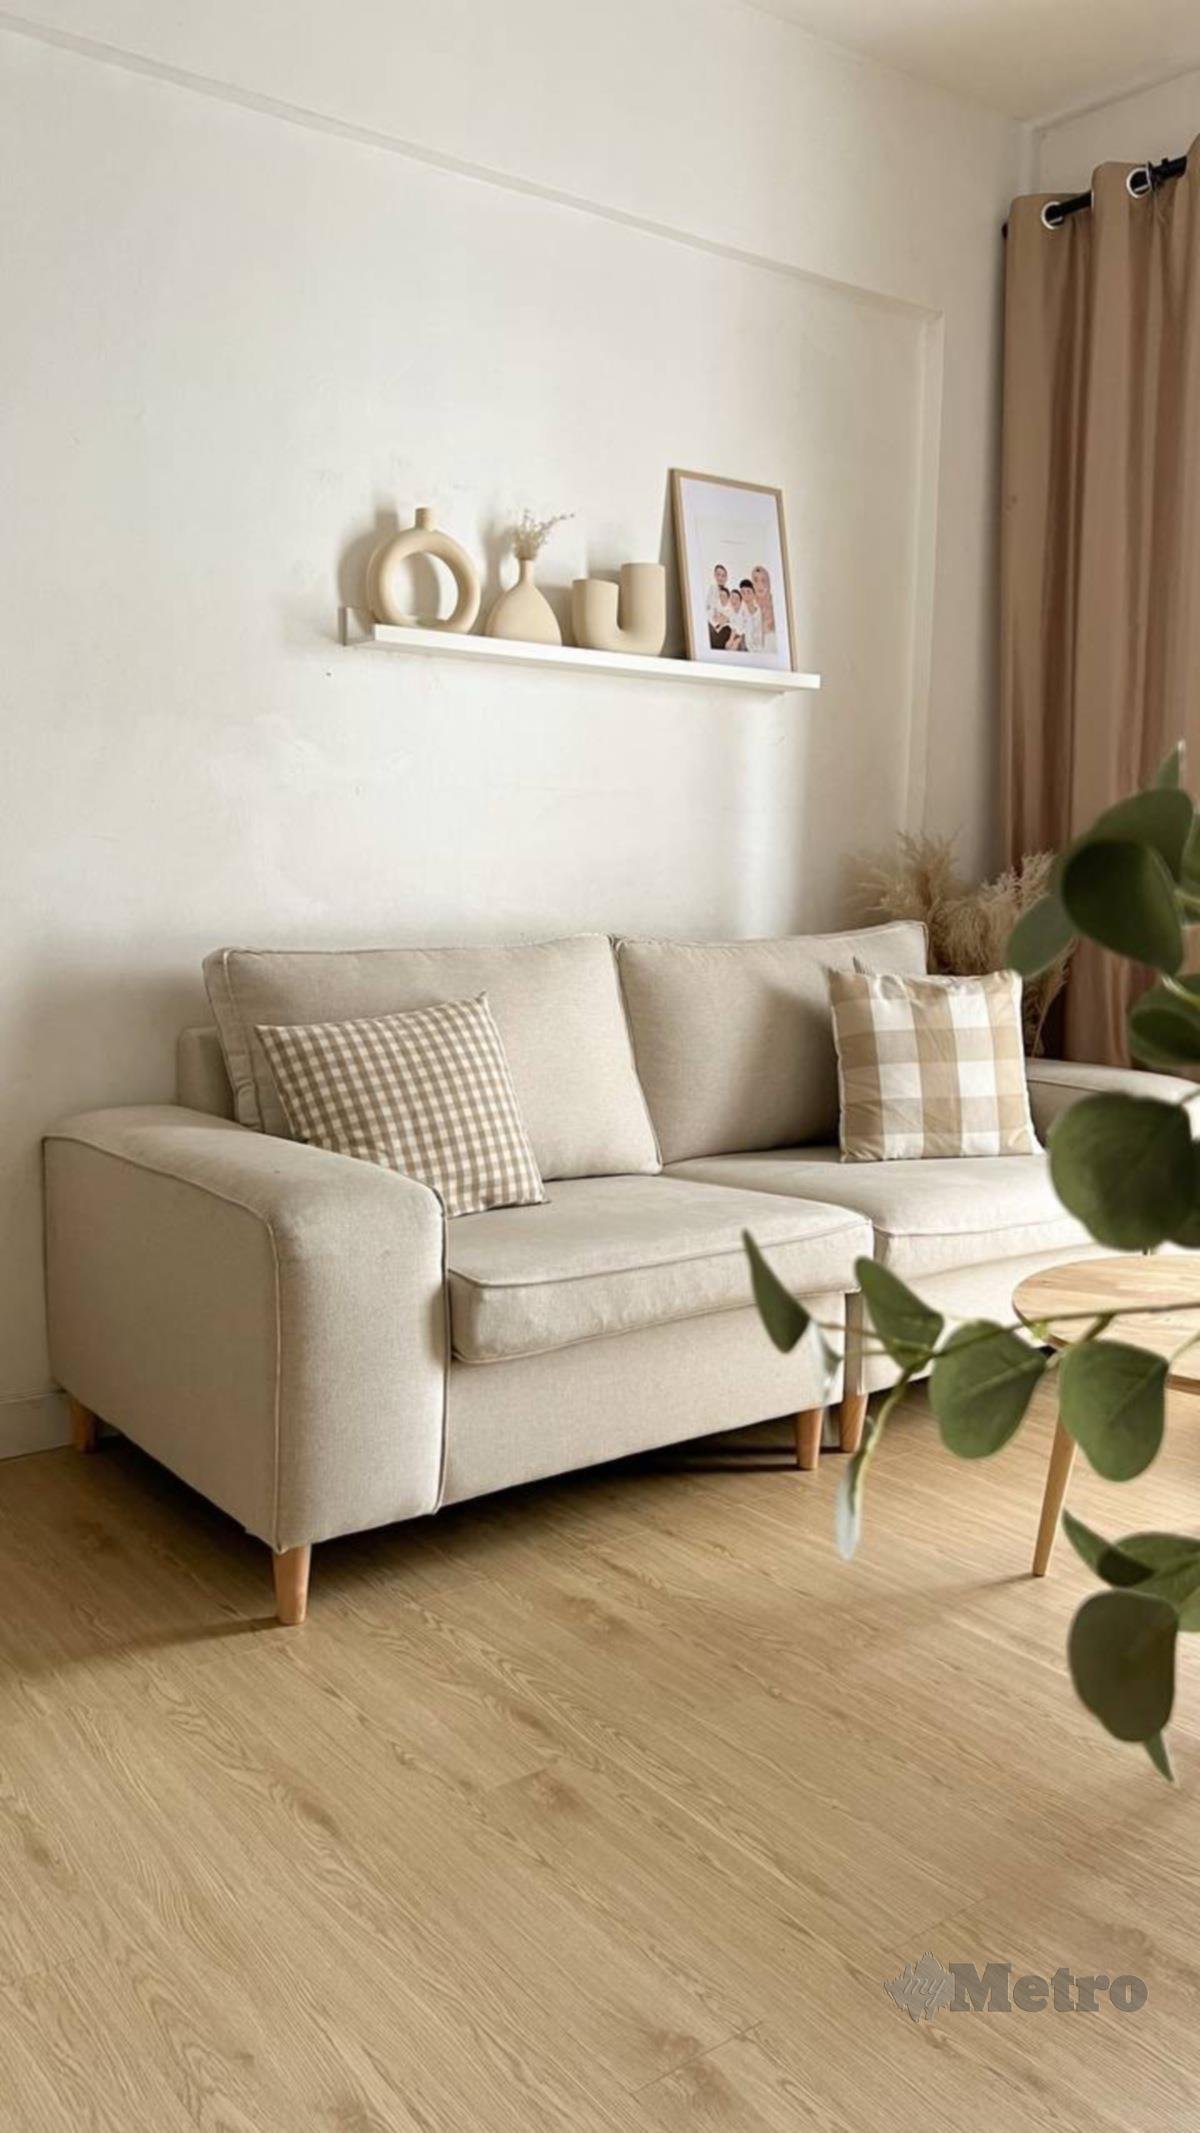 SET Sofa yang lebih lembut rona menjadikan ruang tampak tenang.